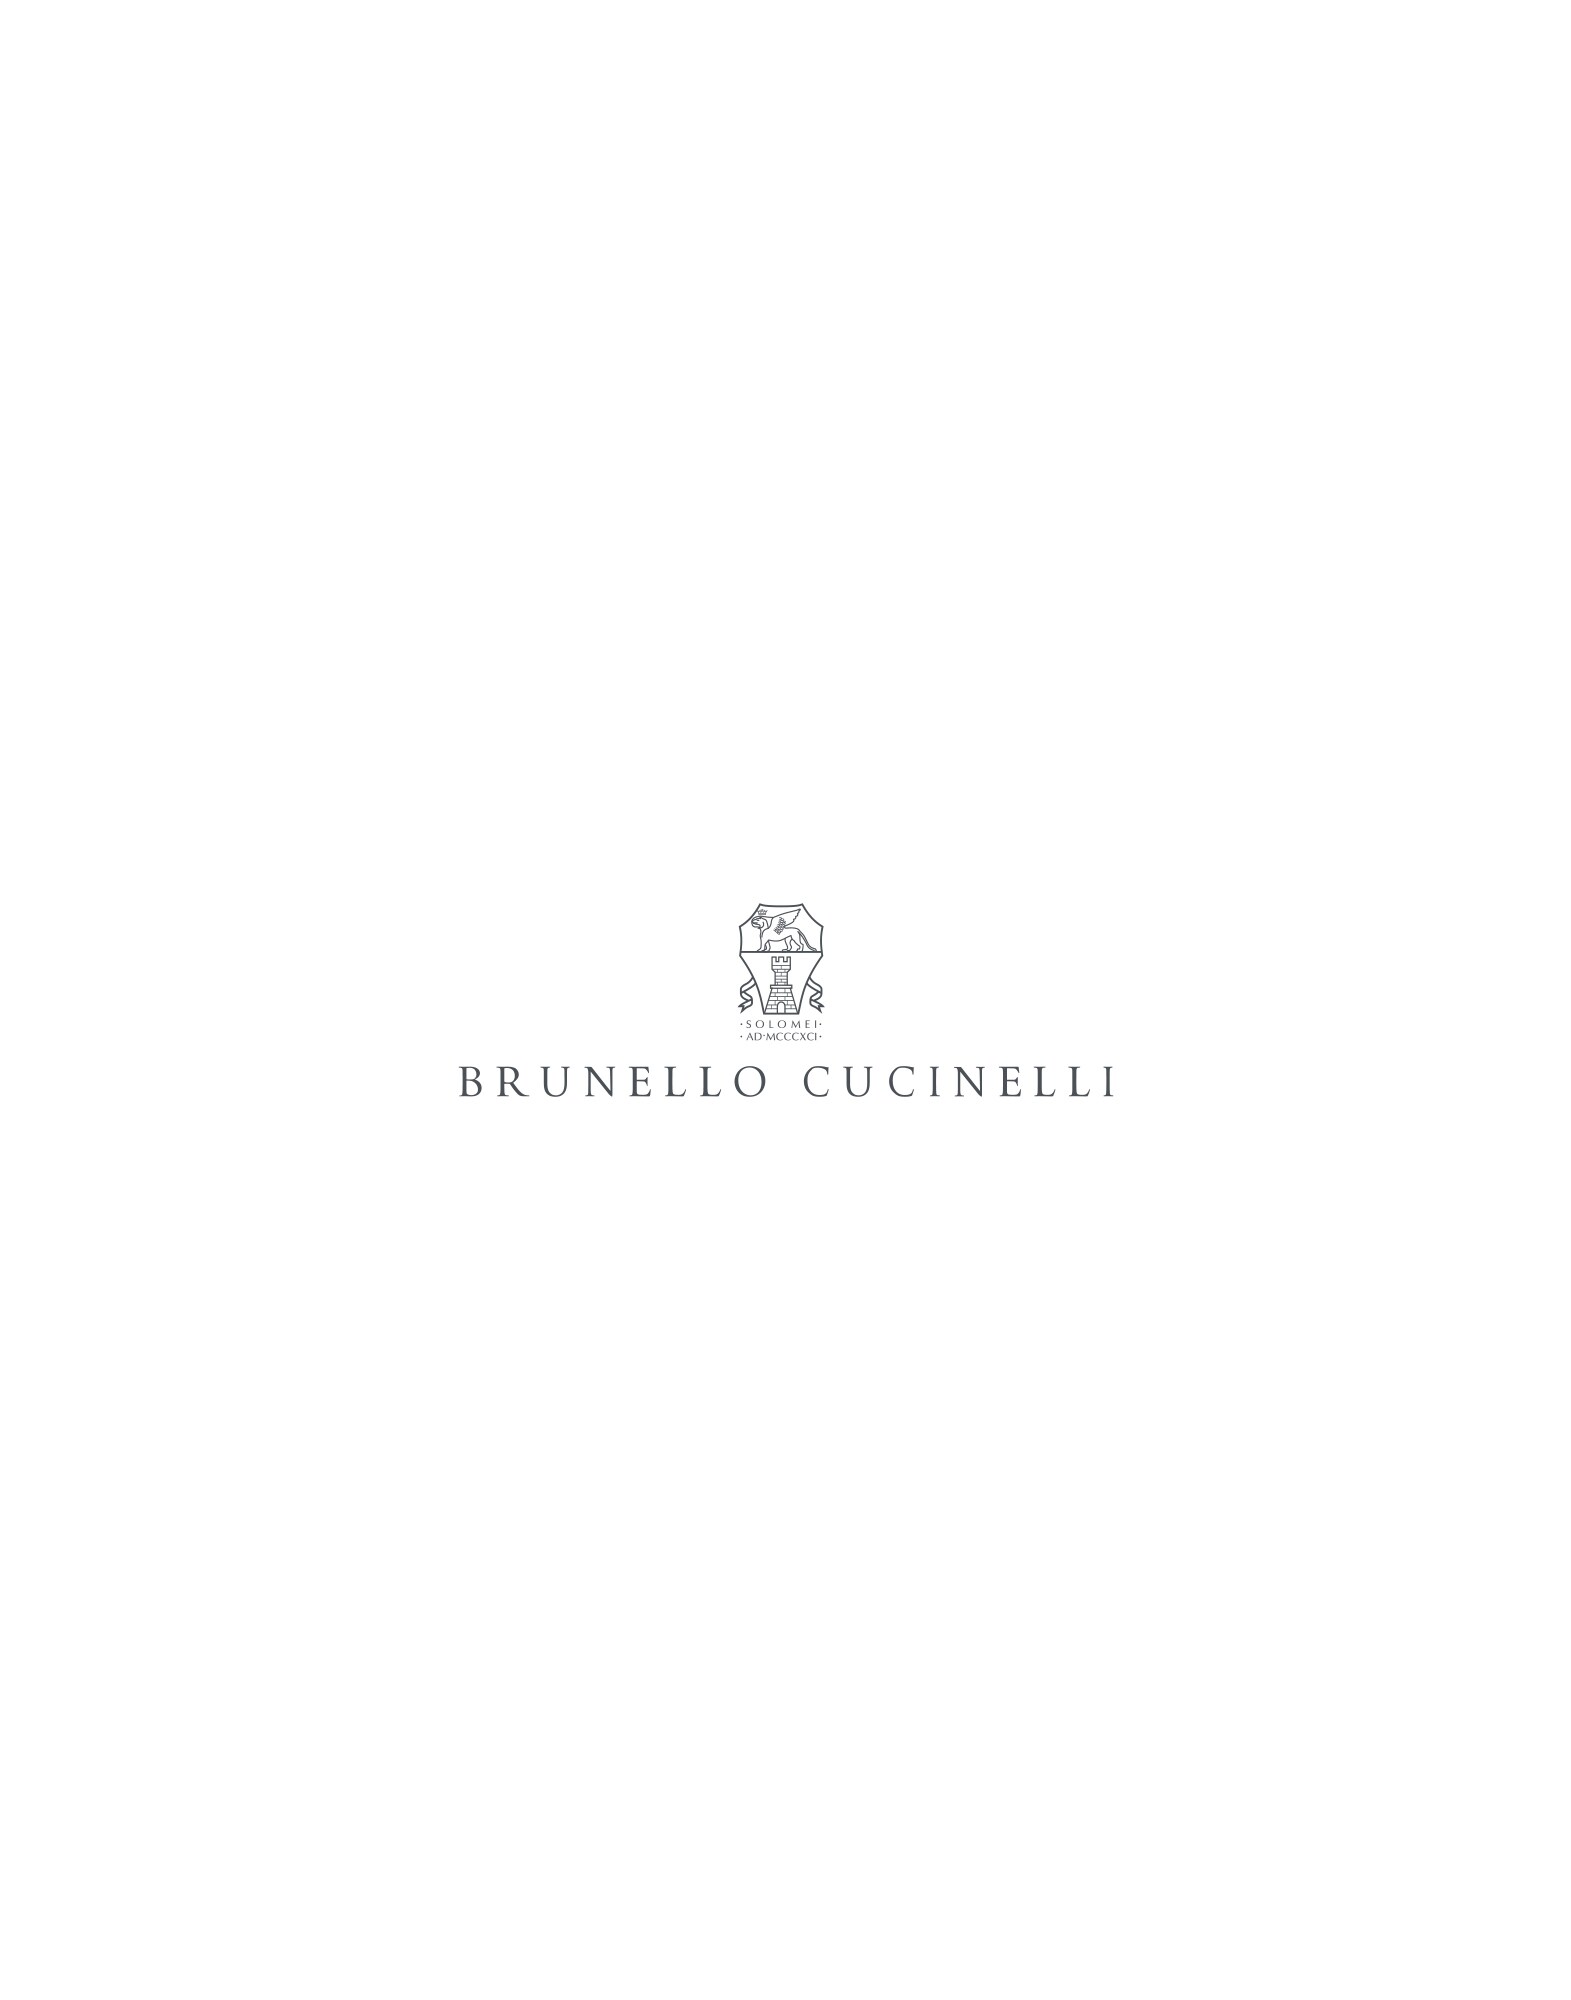 Flannel blazer Blue Boy -
                        Brunello Cucinelli 